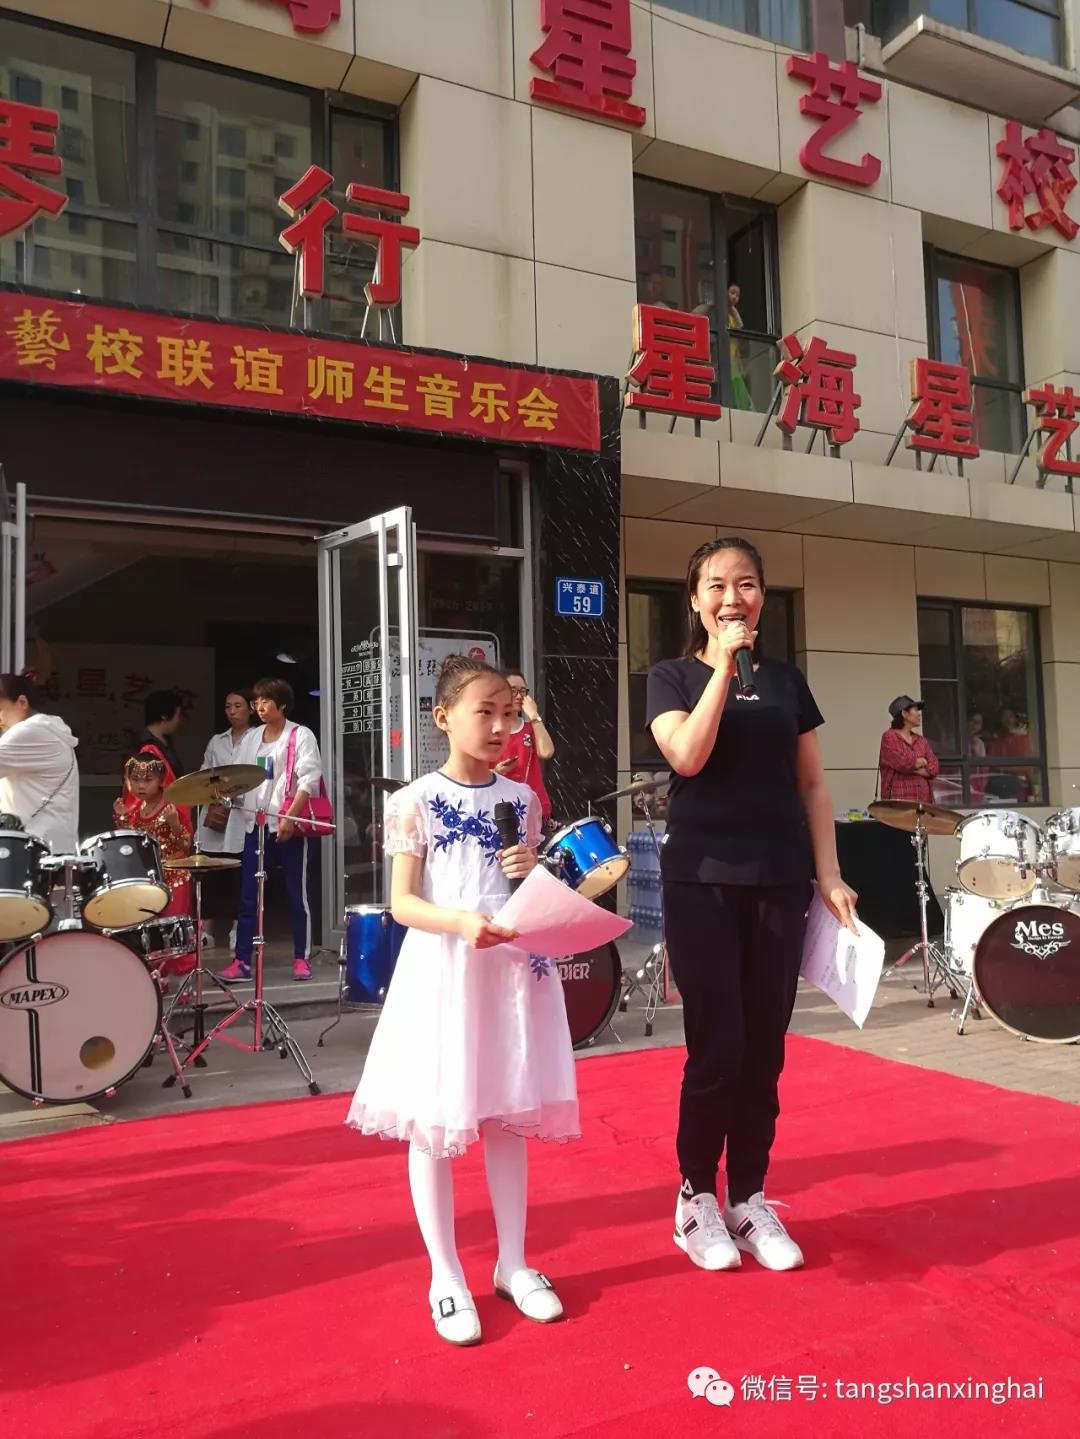 星海唐山演艺传媒公司将参加“红色经典.唱响中国人”的大型公益汇演